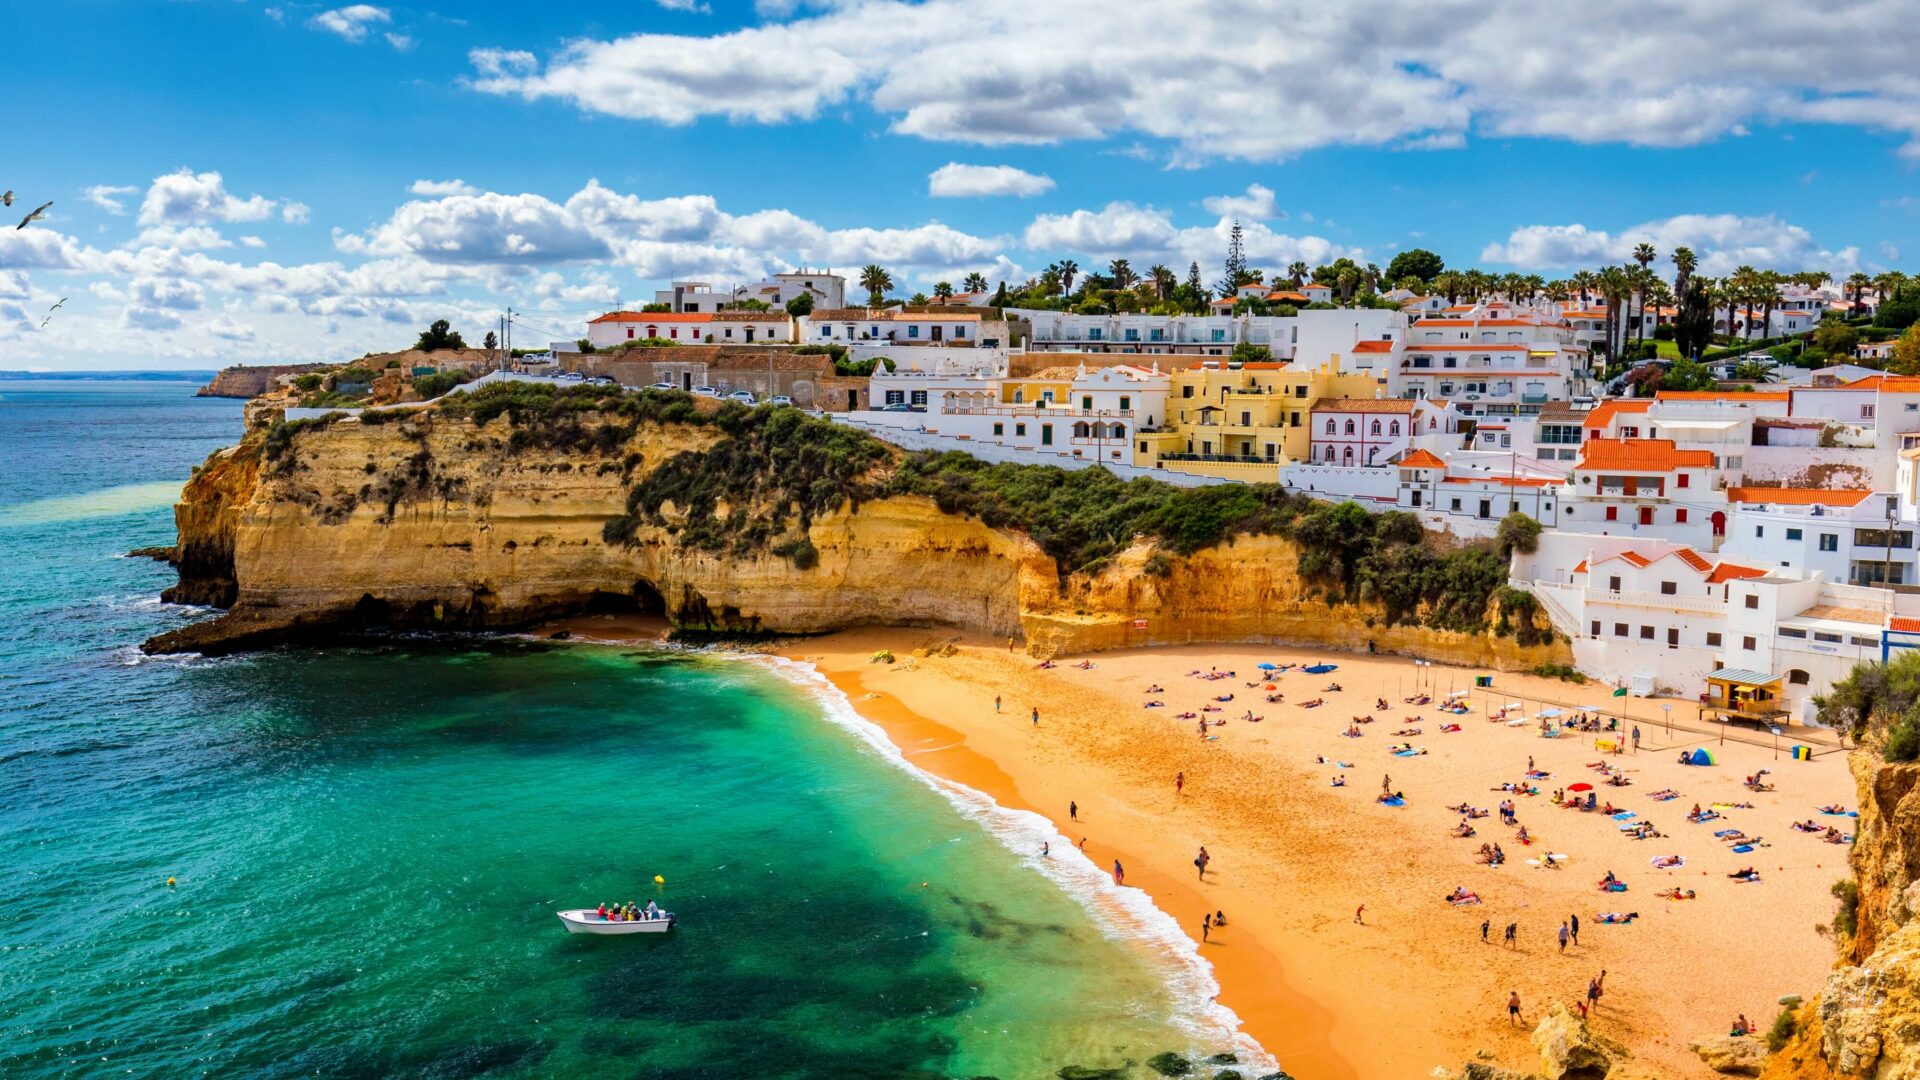 Vista del villaggio di pescatori di Carvoeiro con bellissima spiaggia, Algarve, Portogallo.